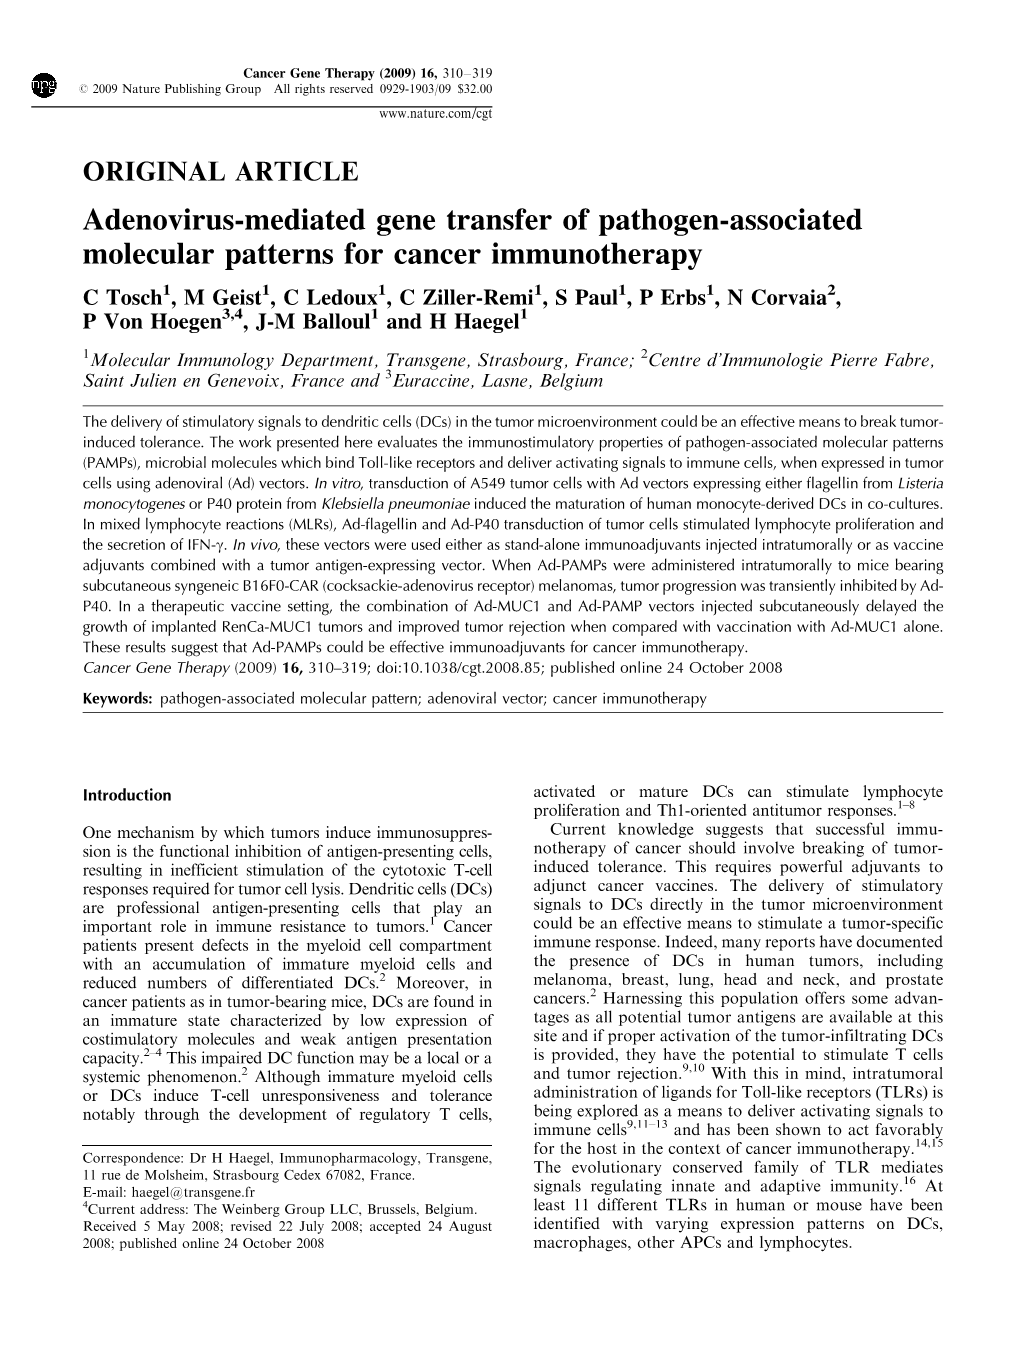 Adenovirus-Mediated Gene Transfer of Pathogen-Associated Molecular